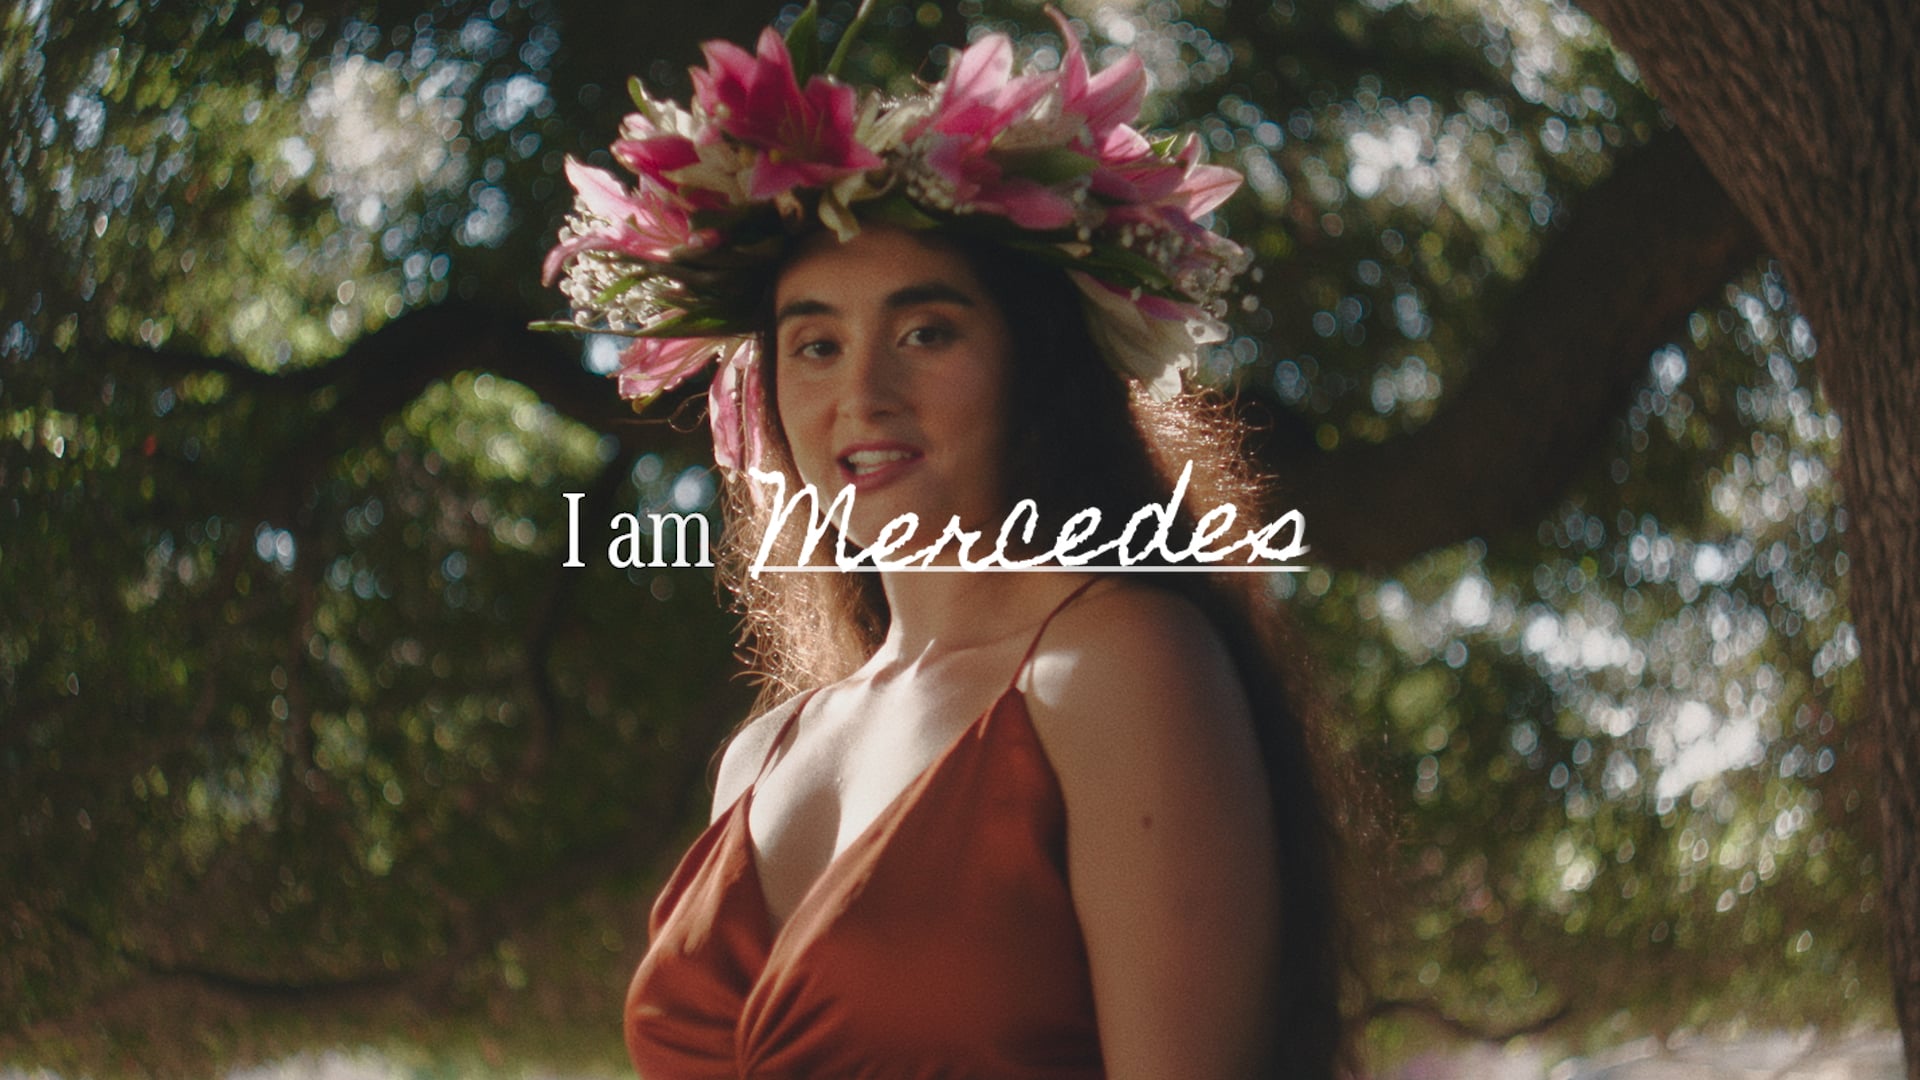 MERCEDES BENZ: "I am Mercedes"